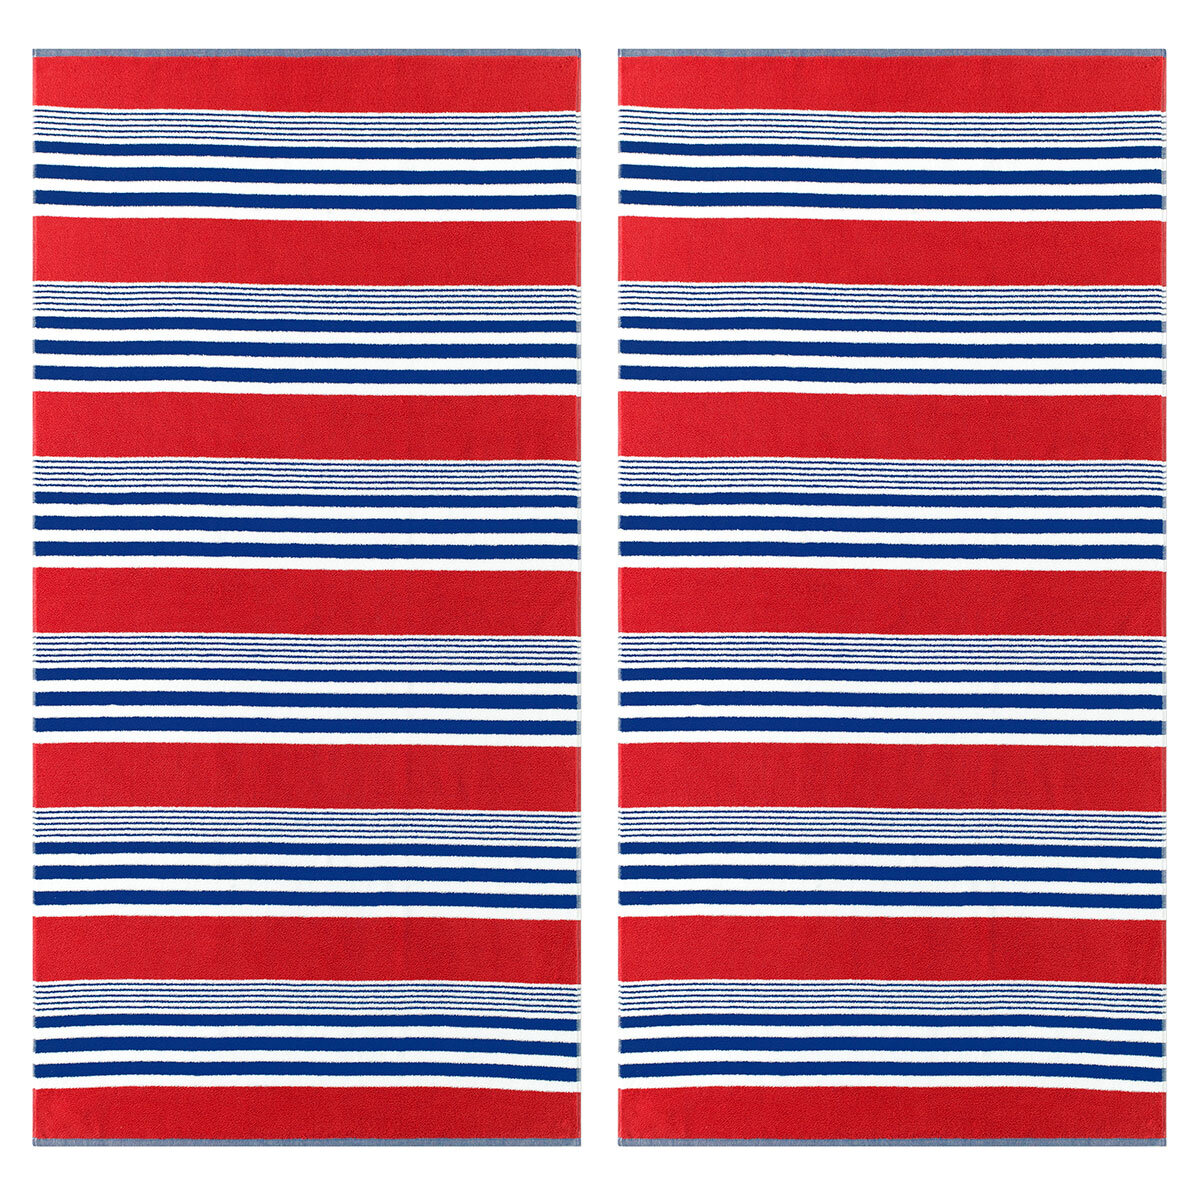 Loftex Resort Beach Towels, Pack of 2 in Horizon design